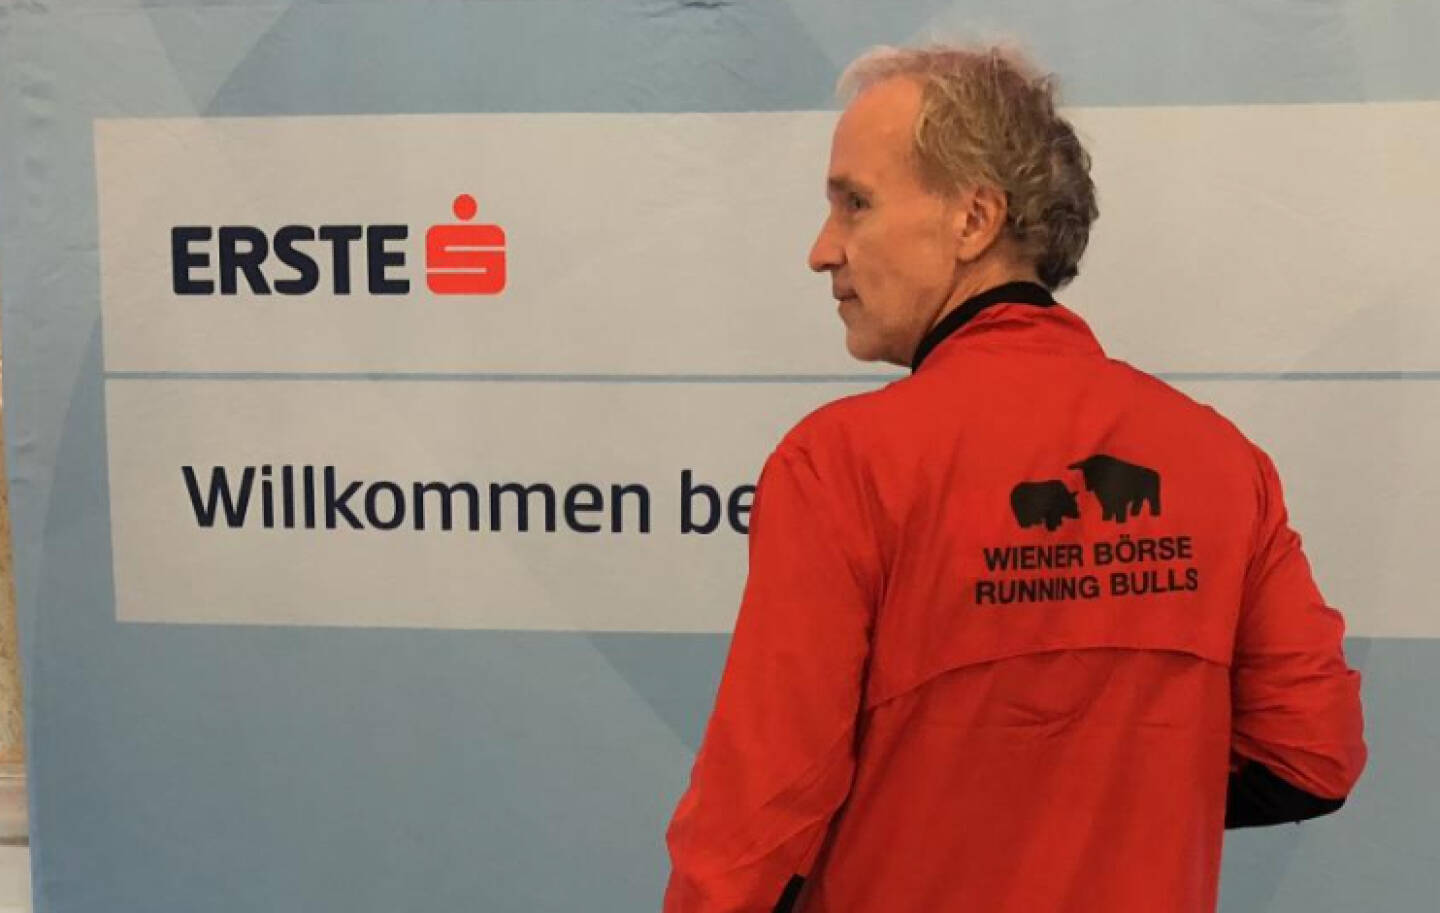 Wiener Börse Running Bulls